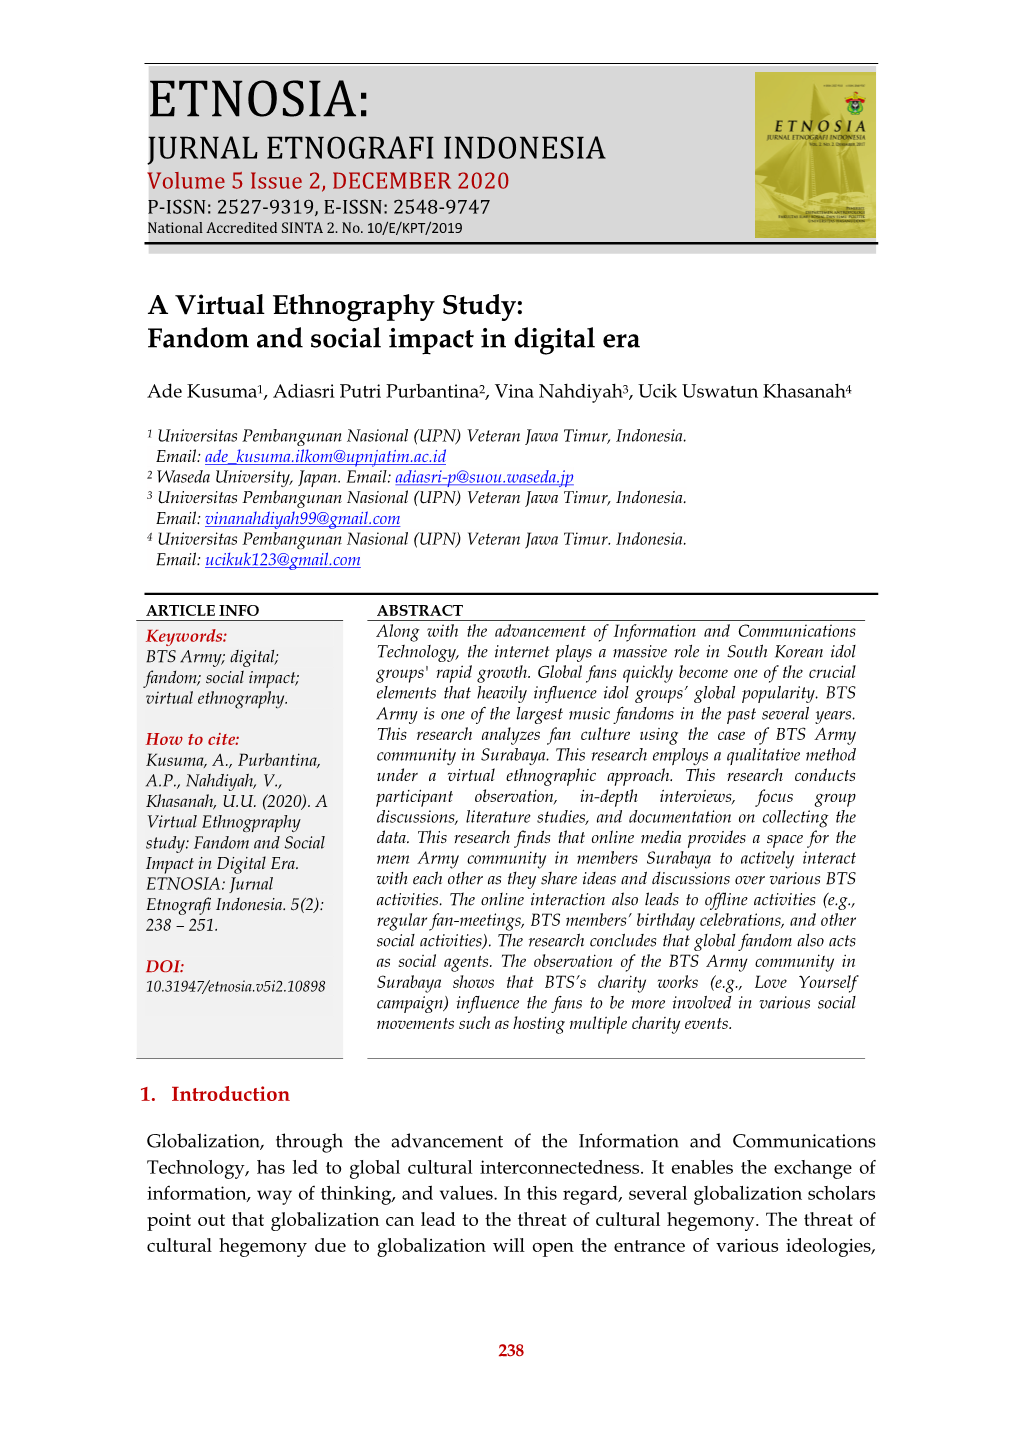 A Virtual Ethnography Study: Fandom and Social Impact in Digital Era